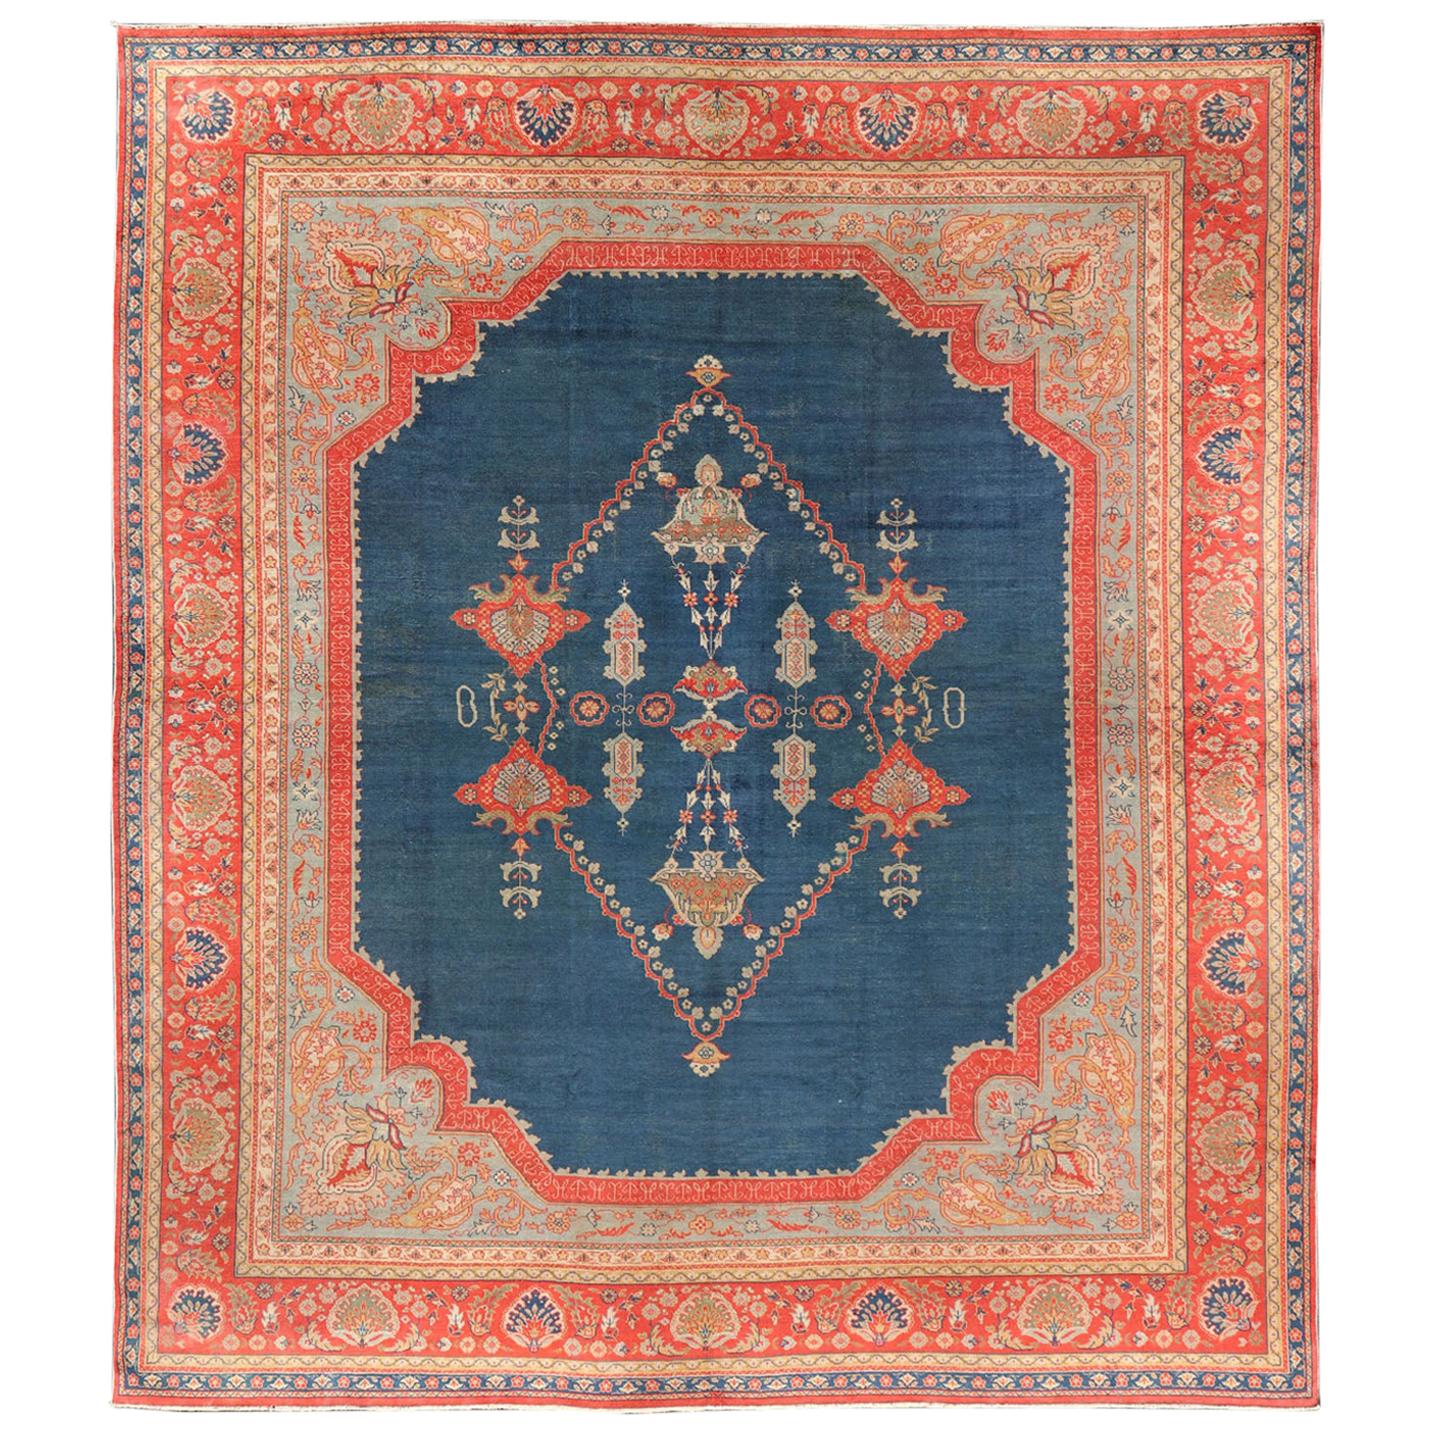 Großer antiker türkischer Oushak-Teppich in Blau und Rot mit verschnörkeltem Medaillon-Design